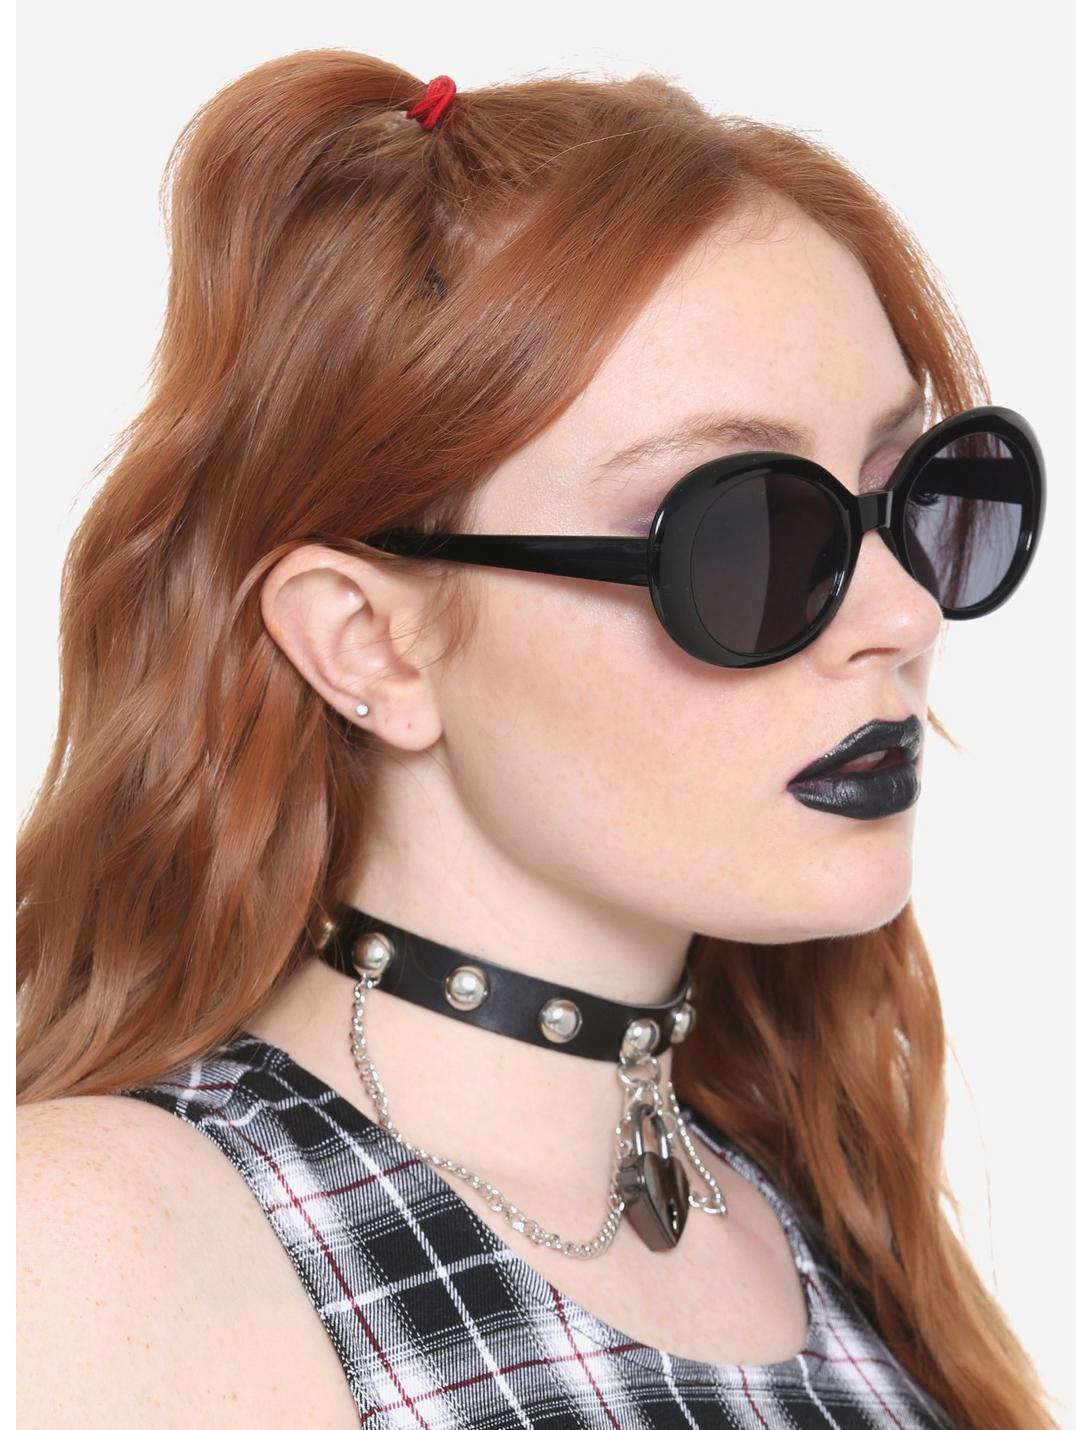 Black Oval Sunglasses, , hi-res